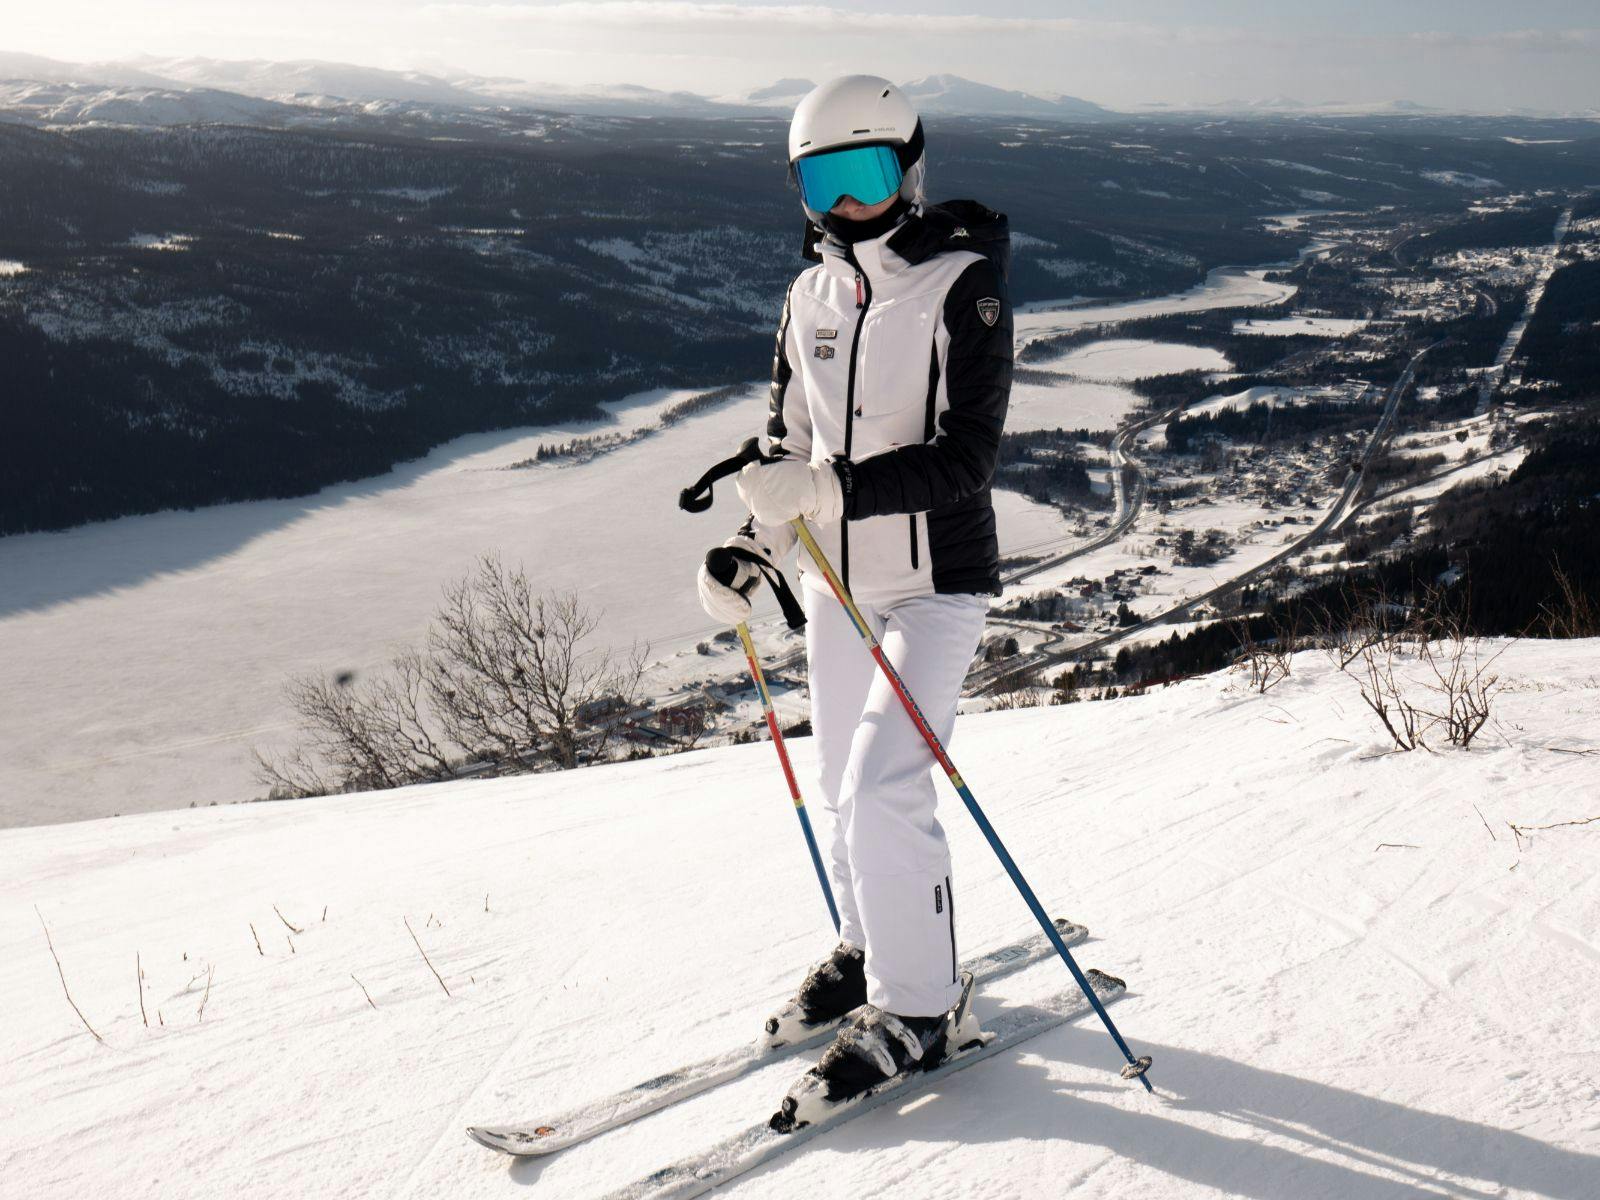 計畫去日本、韓國滑雪嗎？先了解滑雪基礎動作更可以容易上時！